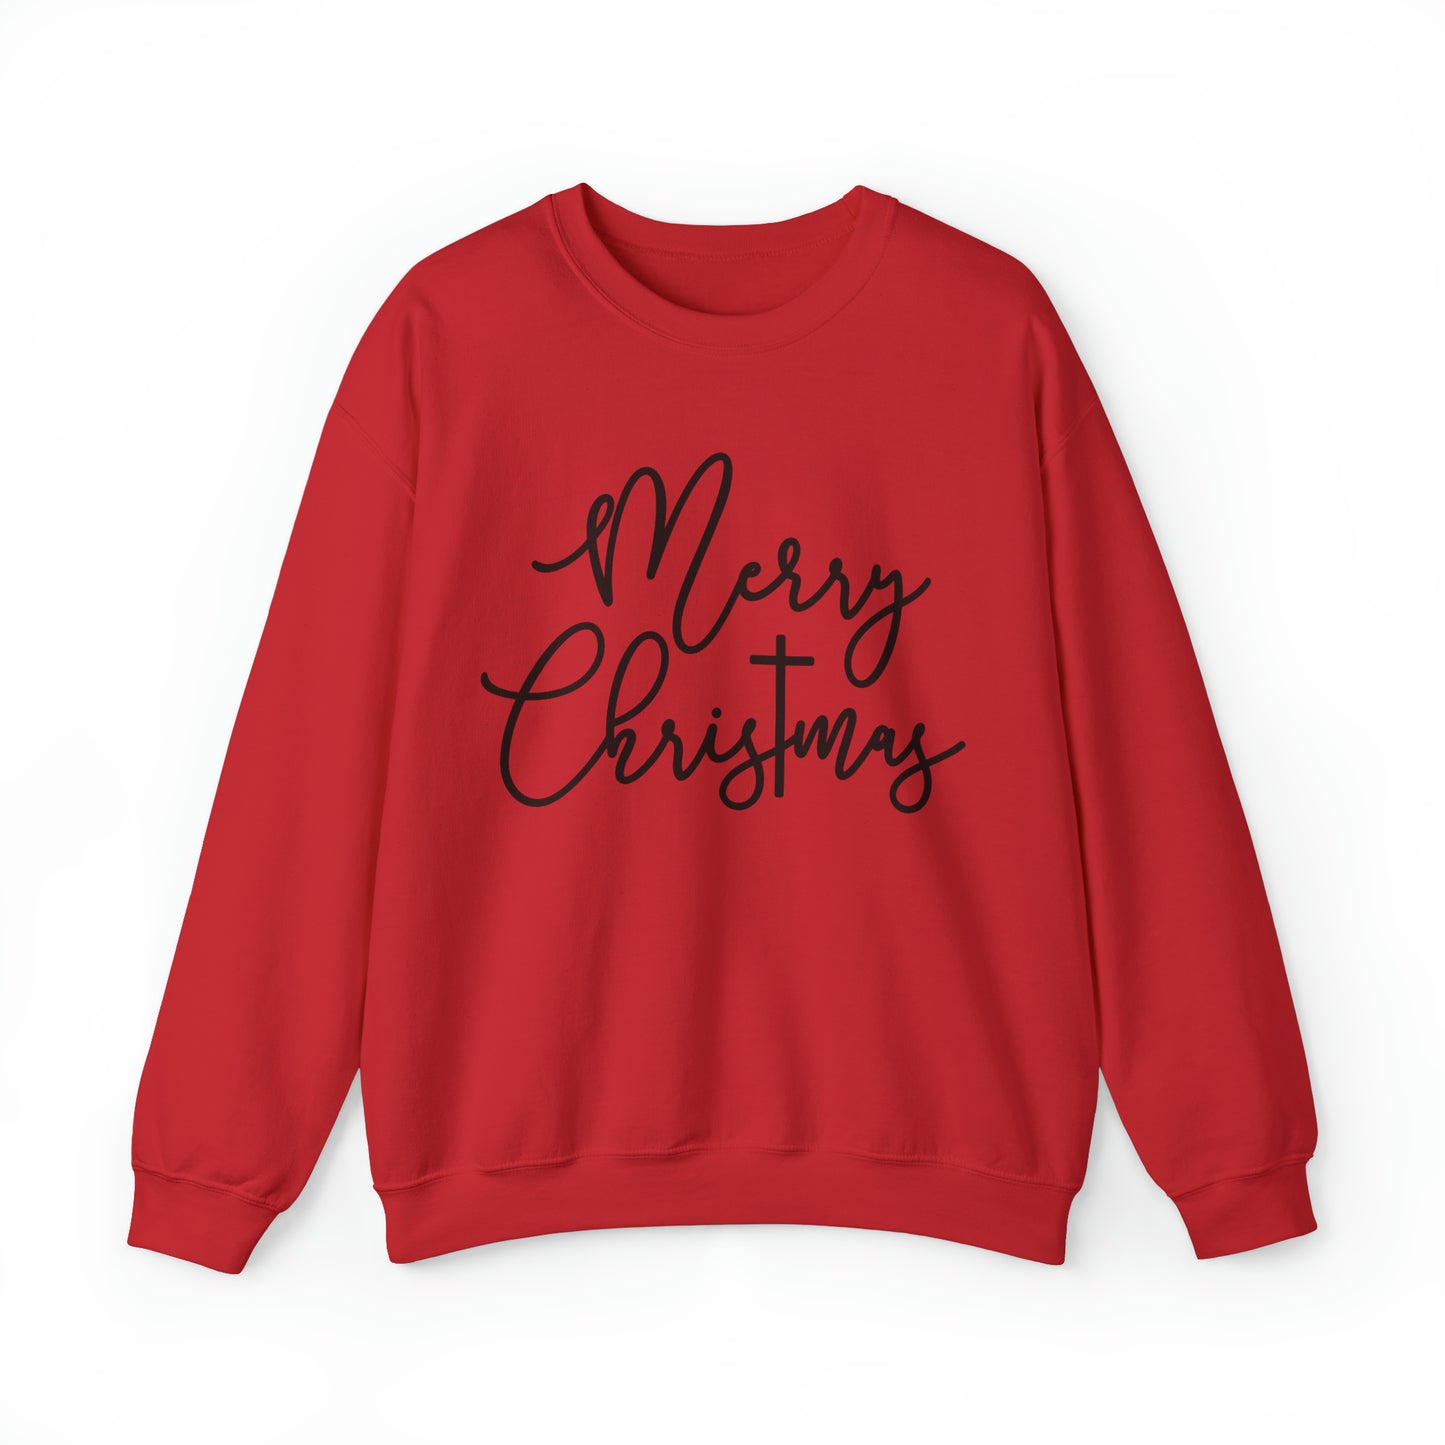 Merry ChrisTmas Women's Christmas Sweatshirt